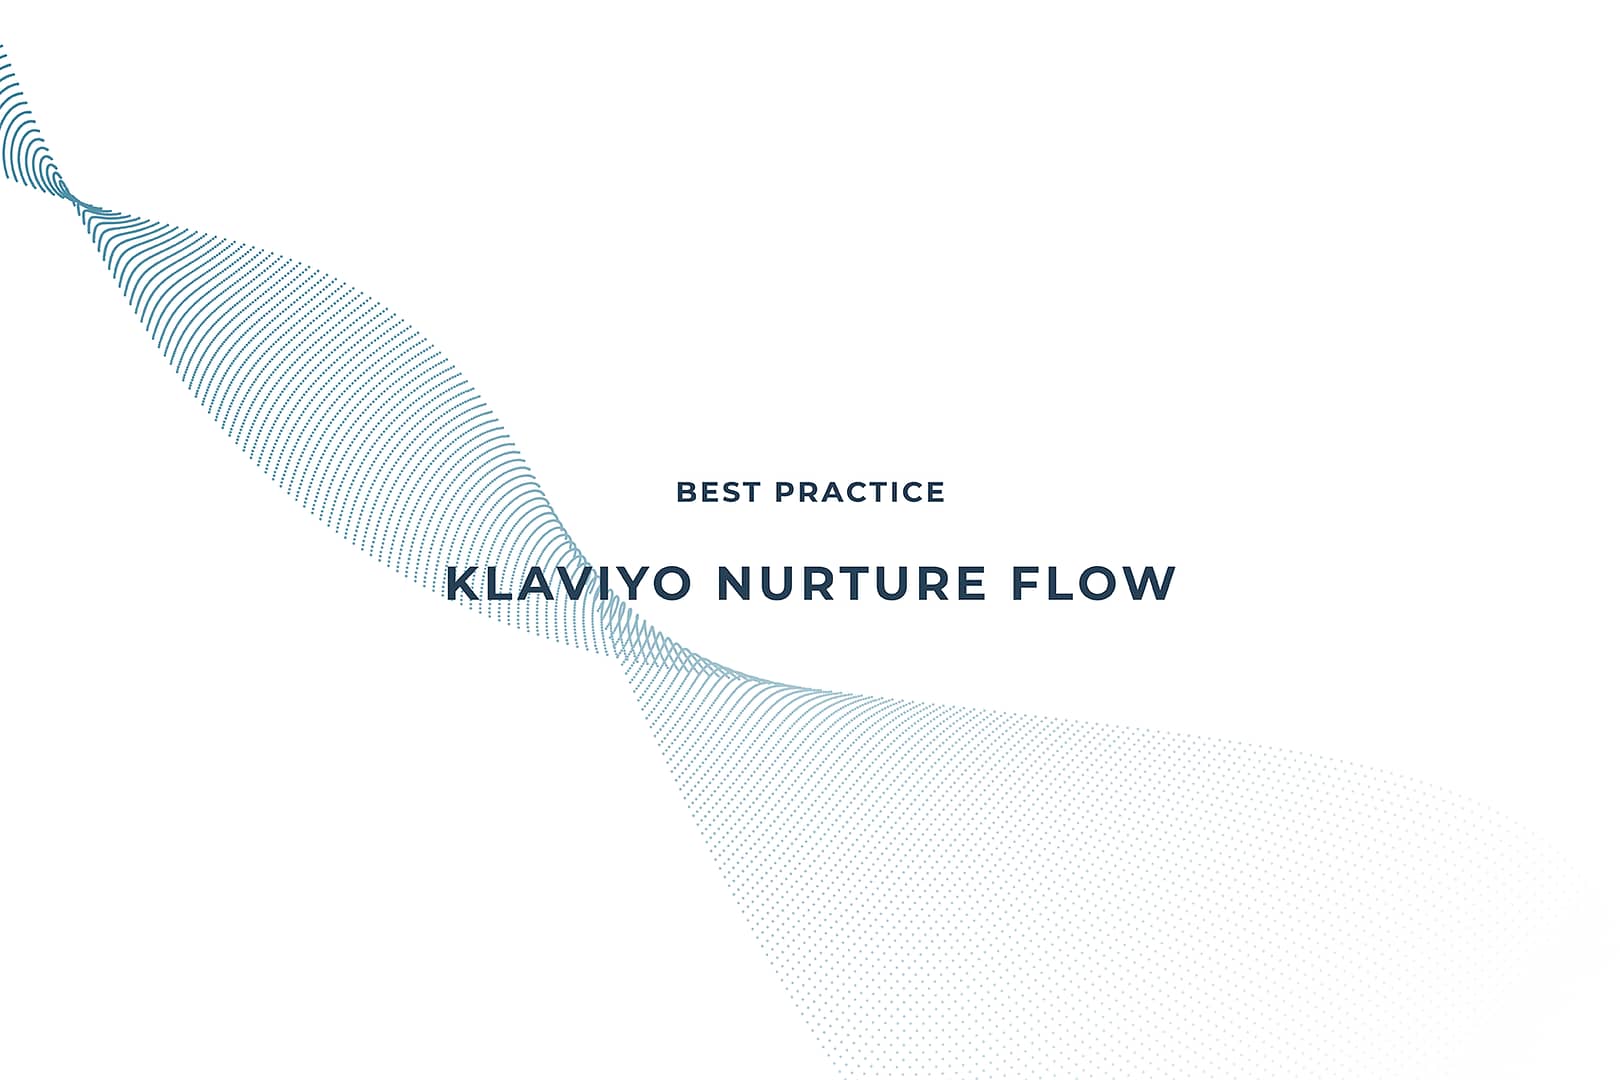 Best Practice Klaviyo Nurture Flow